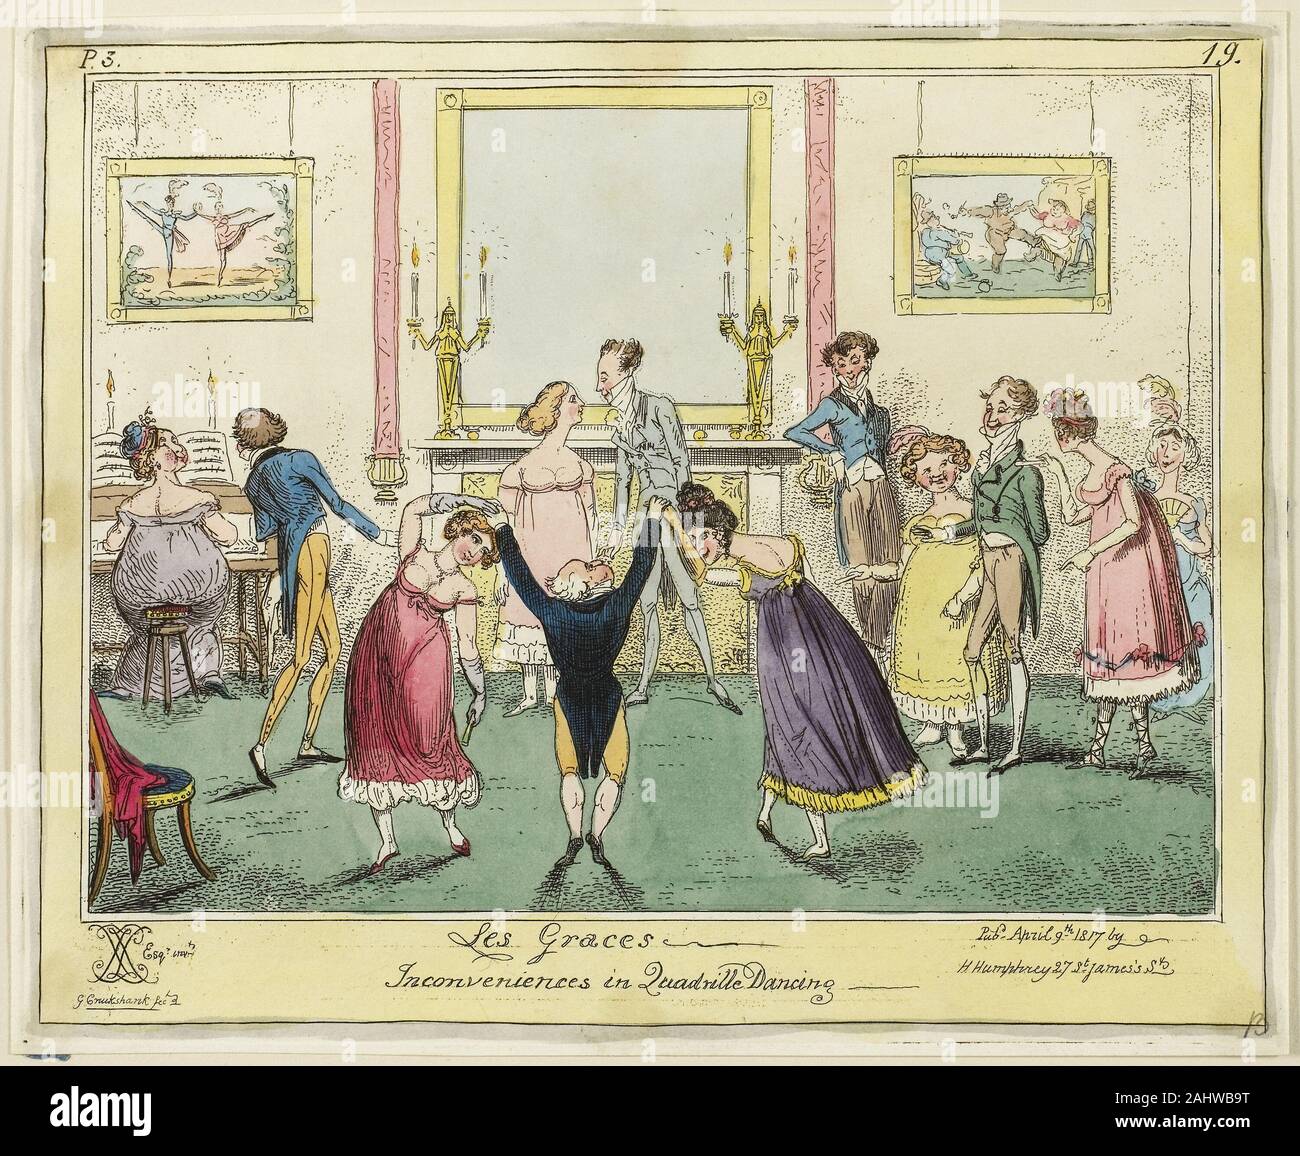 George Cruikshank. Les Gnaden - Unannehmlichkeiten in der Quadrille tanzen. 1817. England. Handcolorierte Radierung und Aquatinta auf Papier Stockfoto